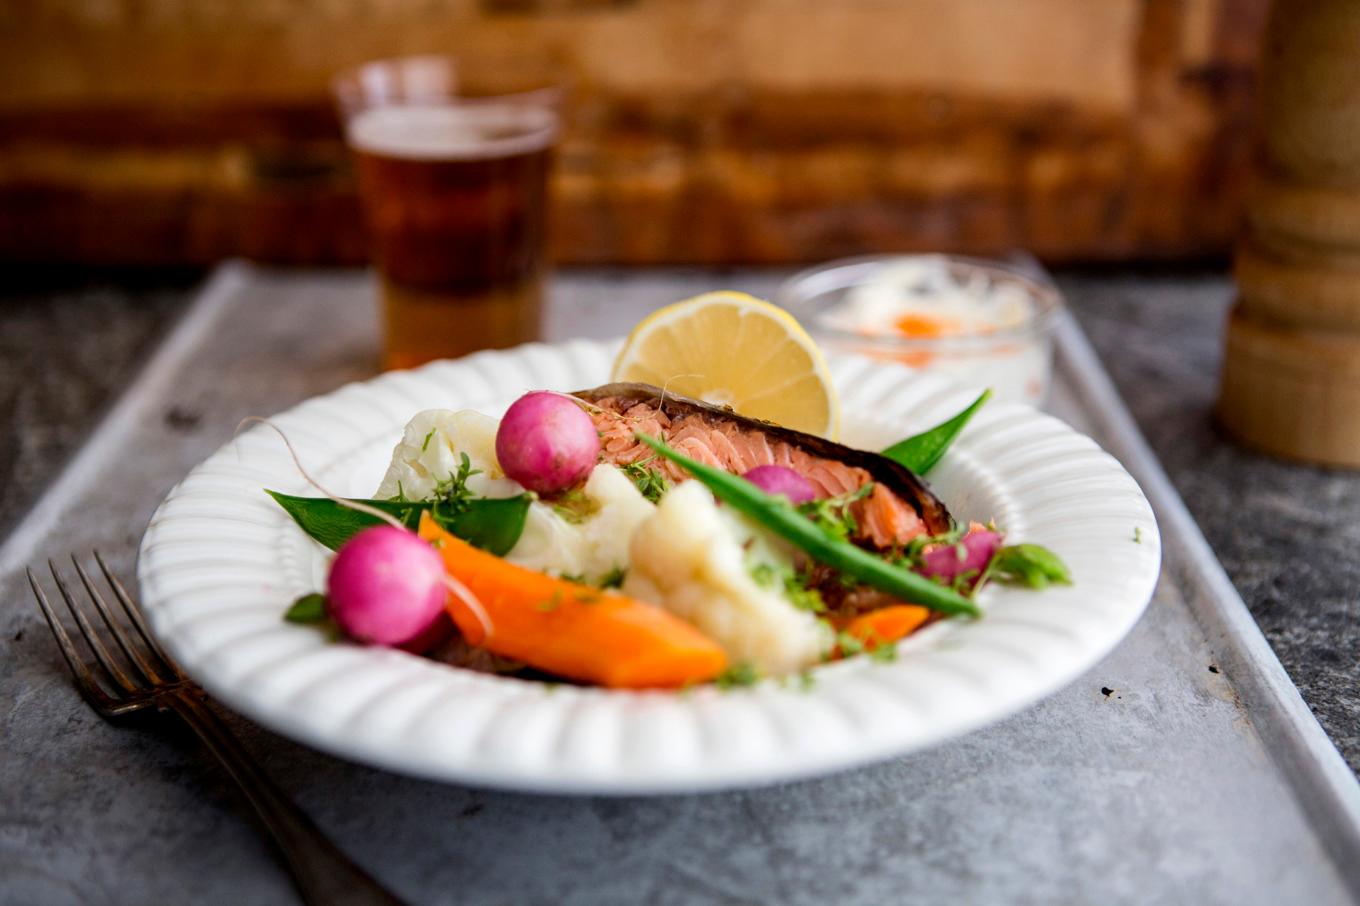 Att äta mycket fisk och skaldjur kopplas till högre halter av PFAS i blodet hos unga, men det finns inte anledning att dra ner på konsumtionen, enligt en expert. Arkivbild. Foto: Christine Olsson/TT